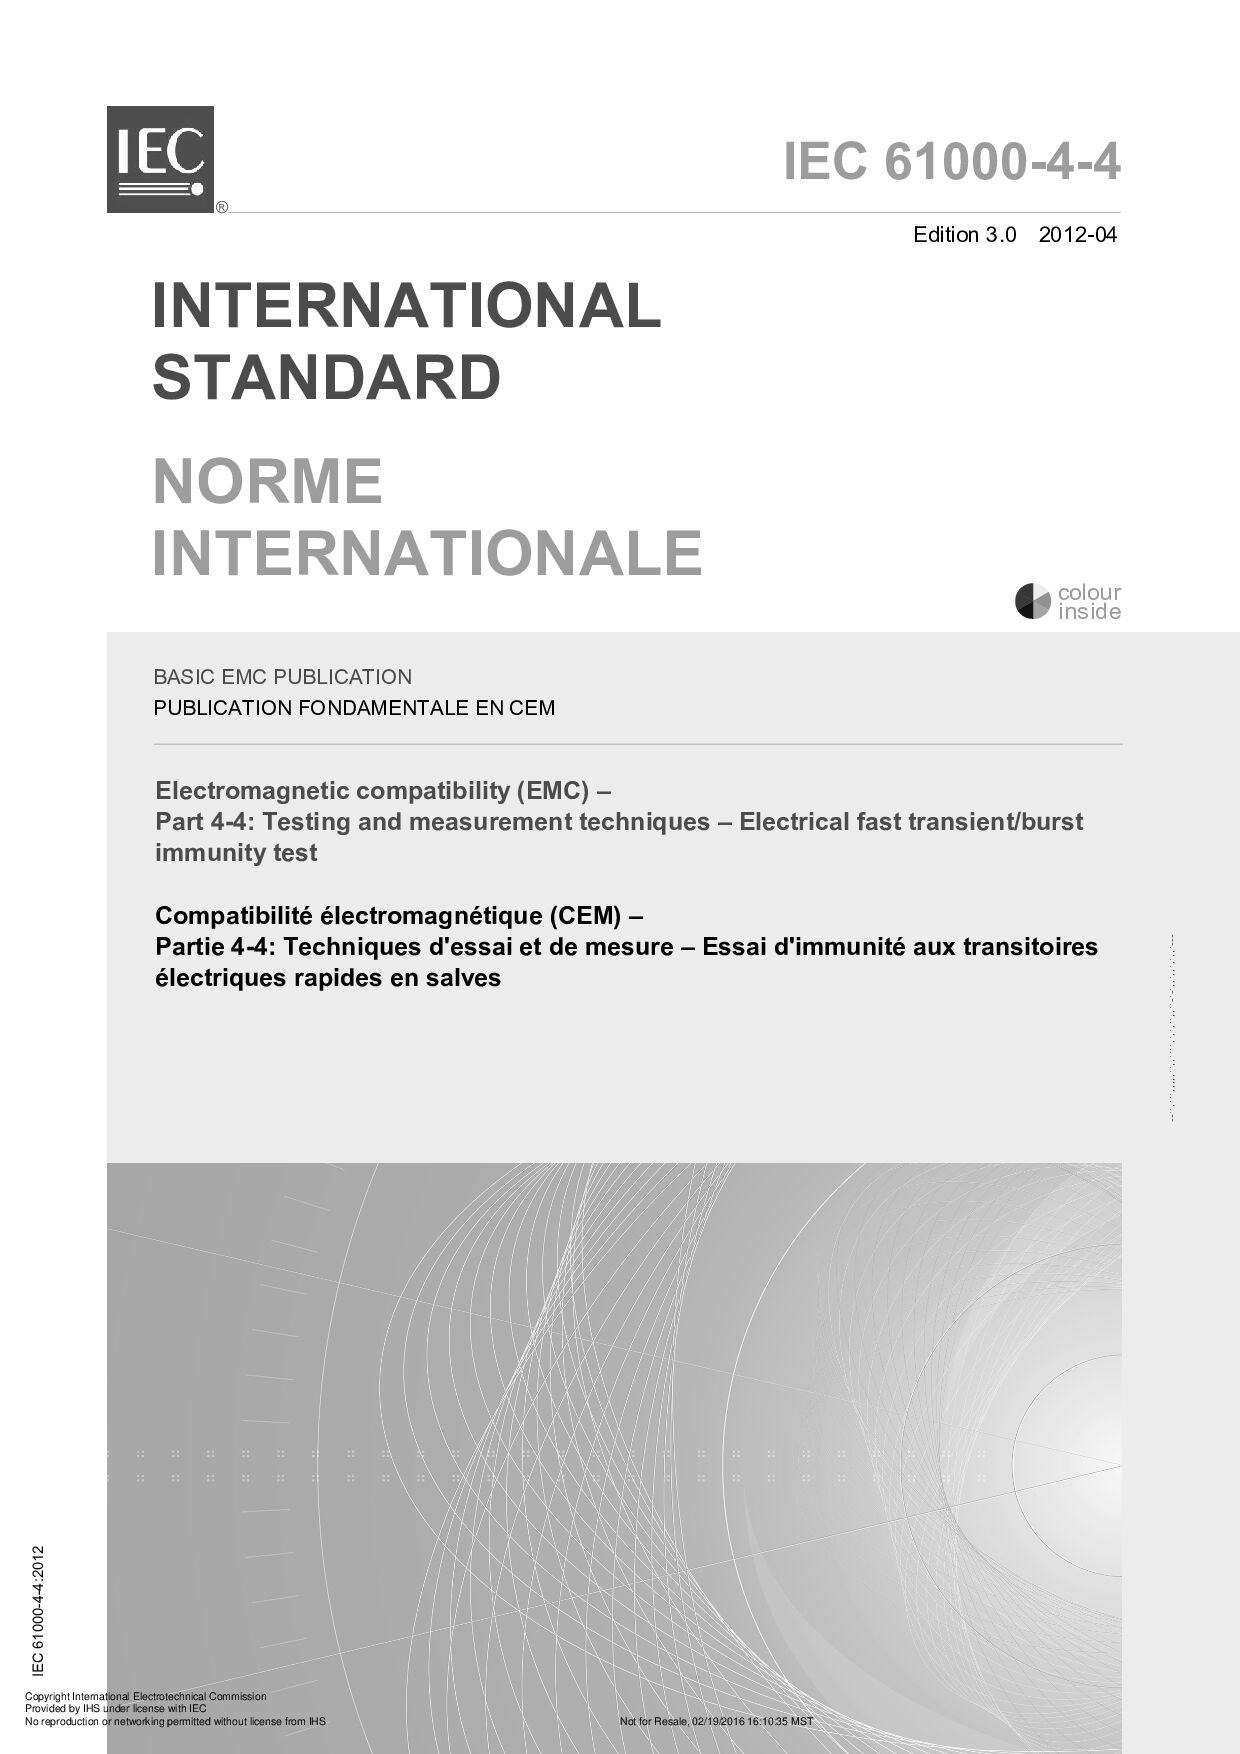 IEC 61000-4-4:2012